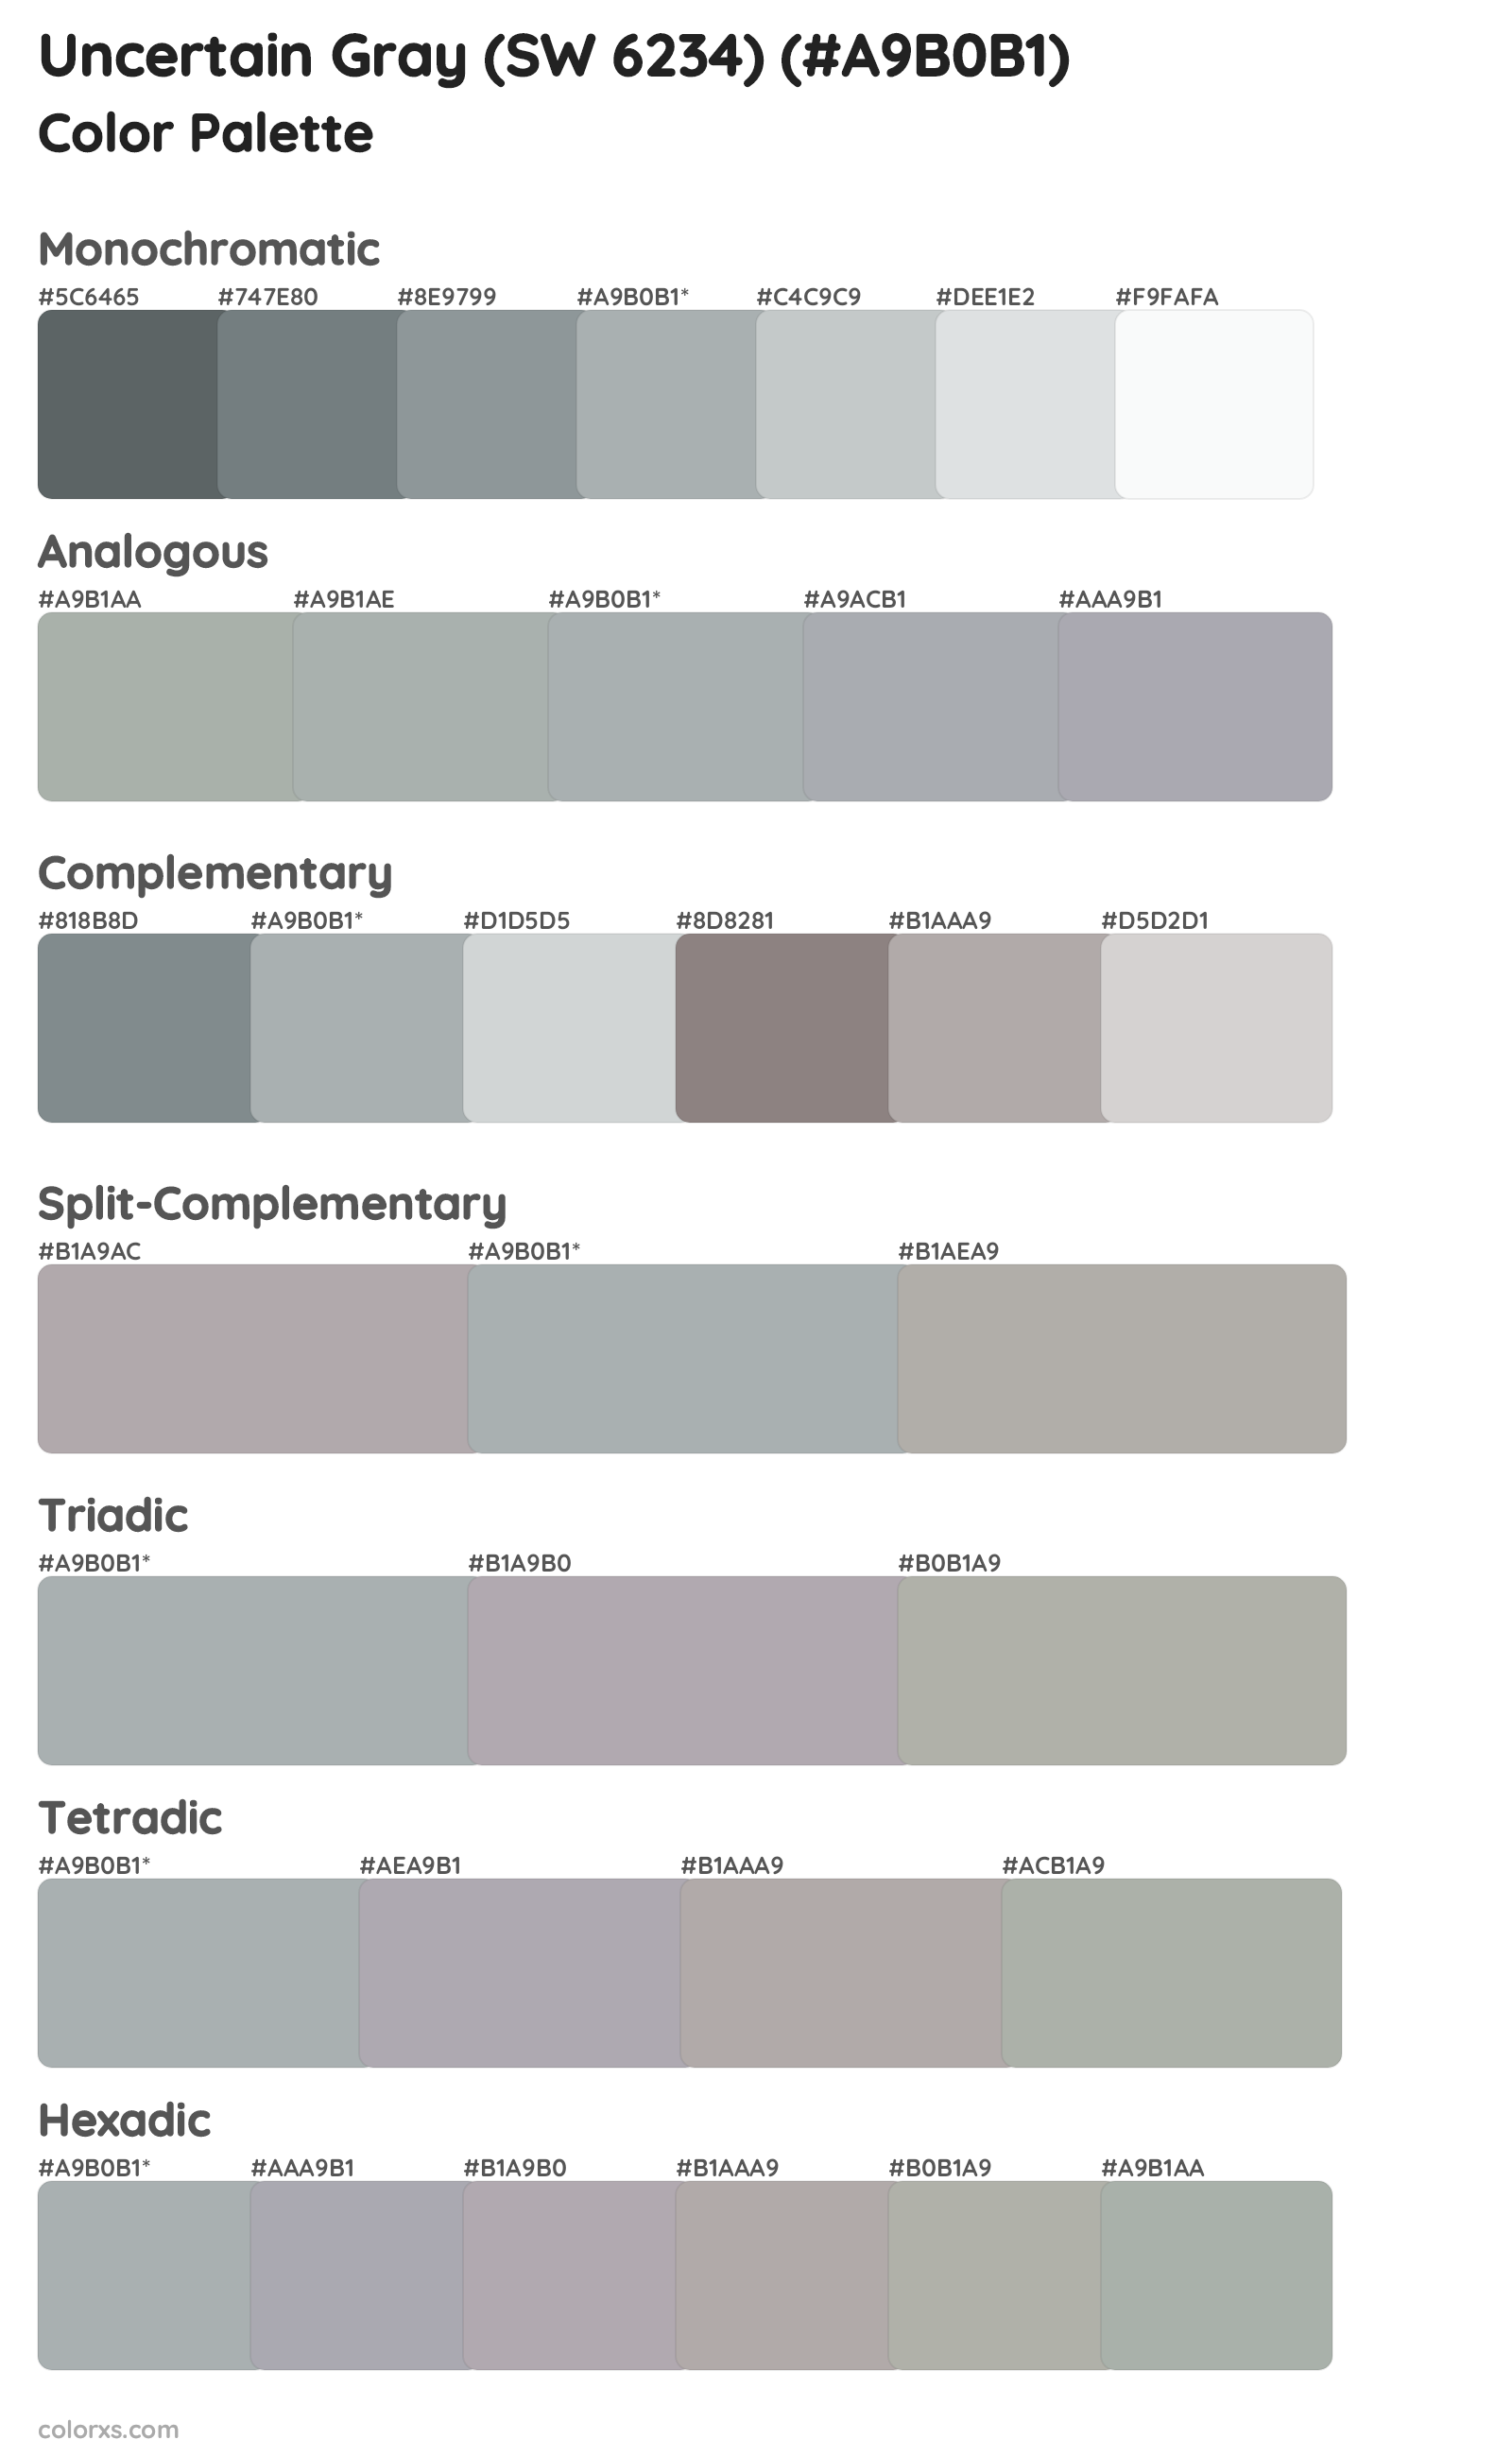 Uncertain Gray (SW 6234) Color Scheme Palettes